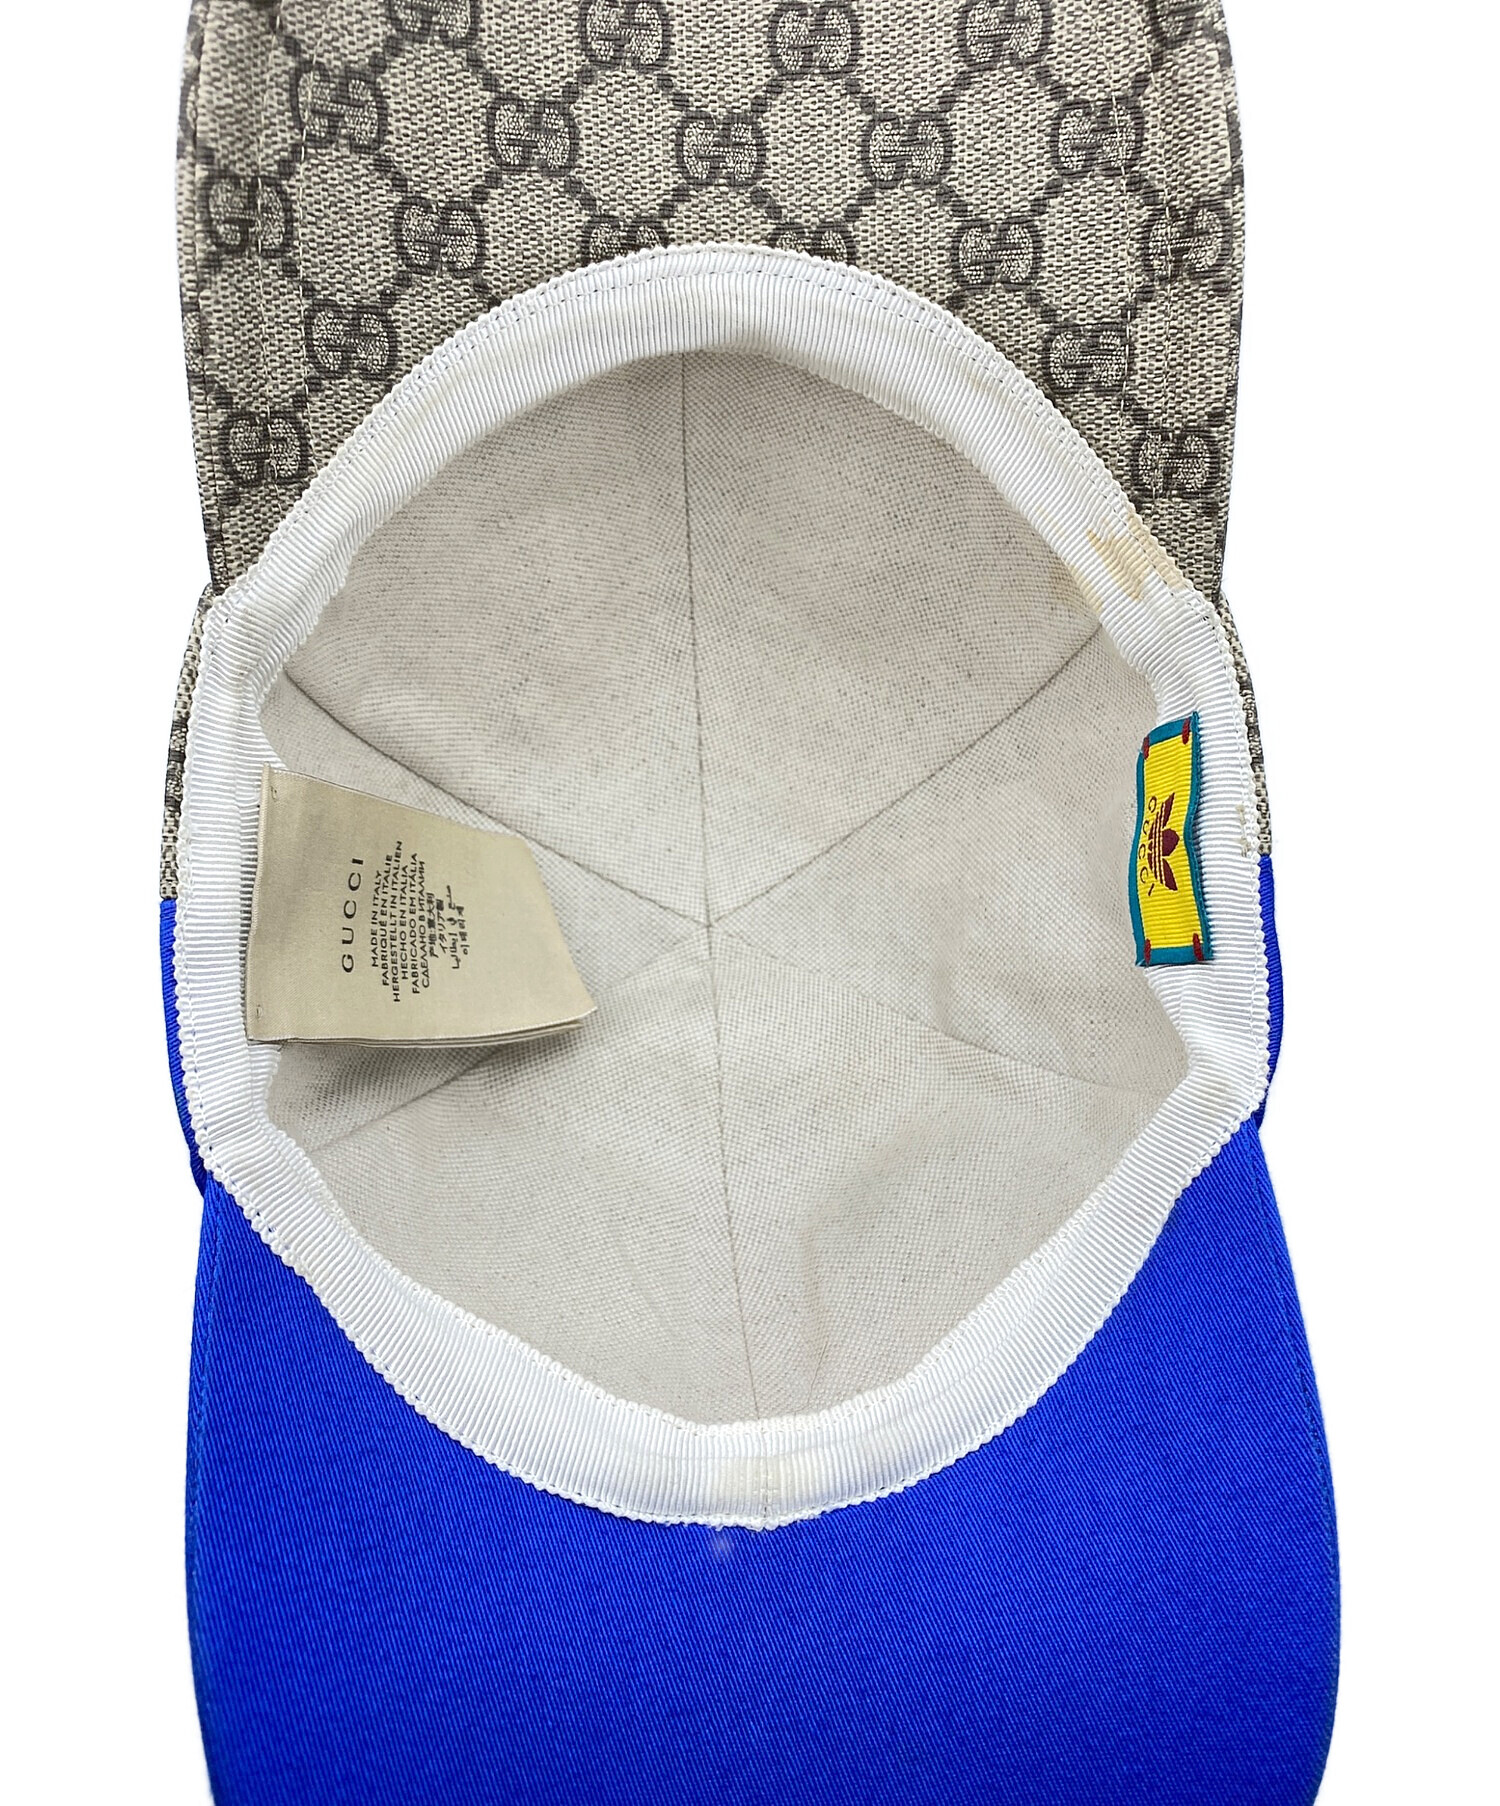 GUCCI (グッチ) adidas (アディダス) Double Sided Baseball Hat ブルー×ブラウン